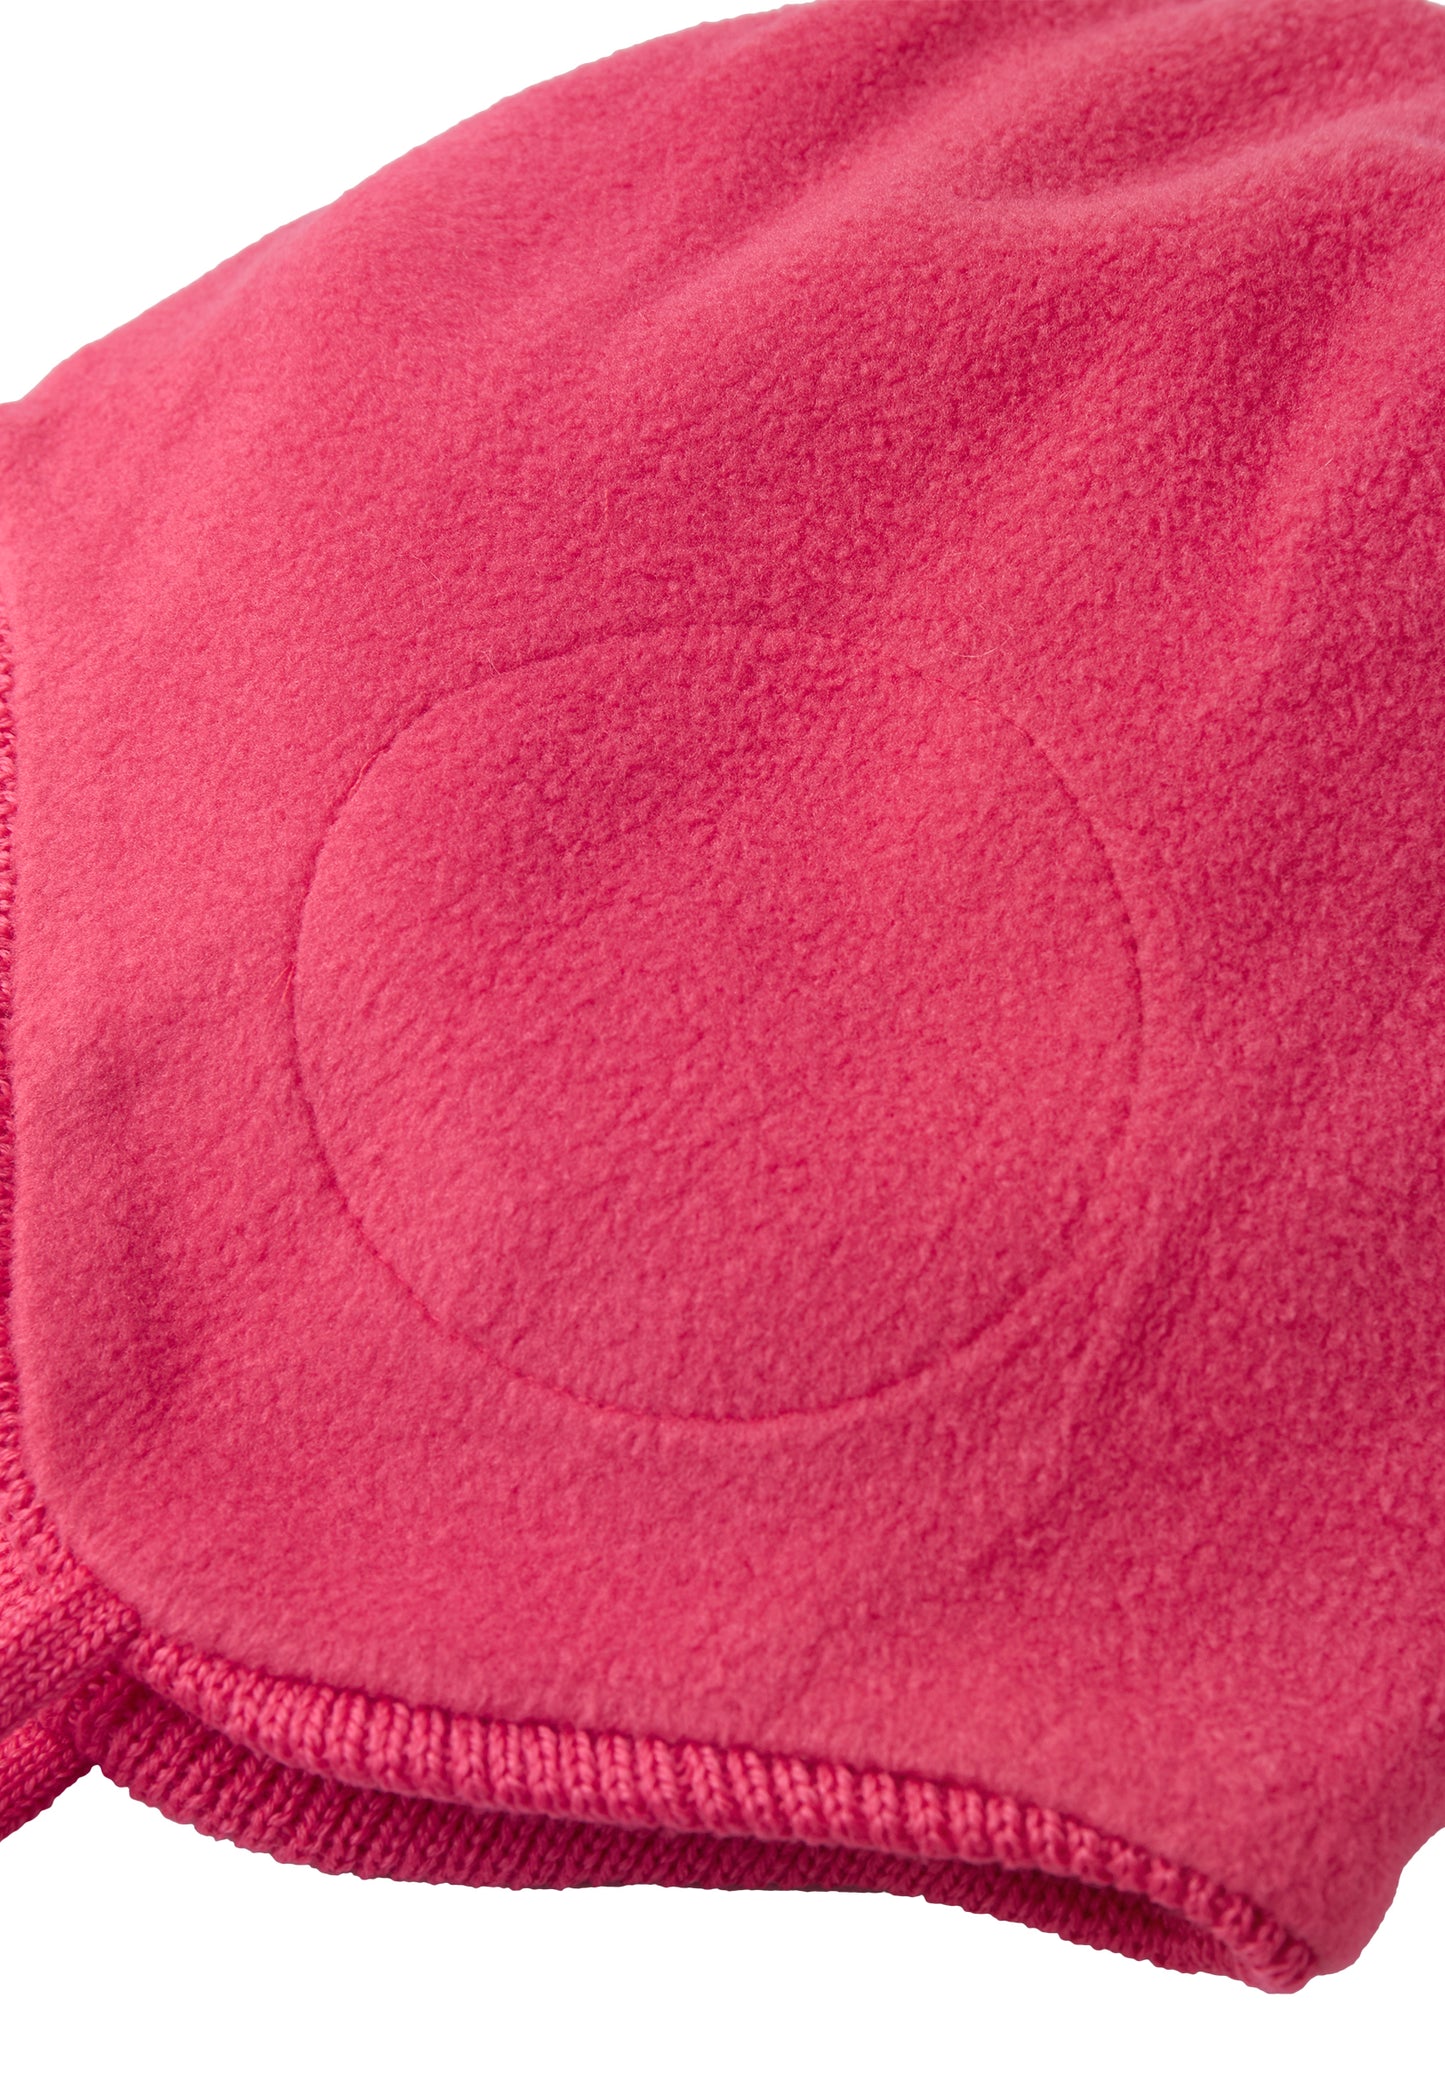 Reima Mädchen-Mütze mit Bändel<br> Piponen <br>Gr. 48, 50 <br>innen hautfreundliches Fleece<br> aussen warme, wasserabweisende Merino-Wolle<br>Windstopper-Membrane im Ohrbereich